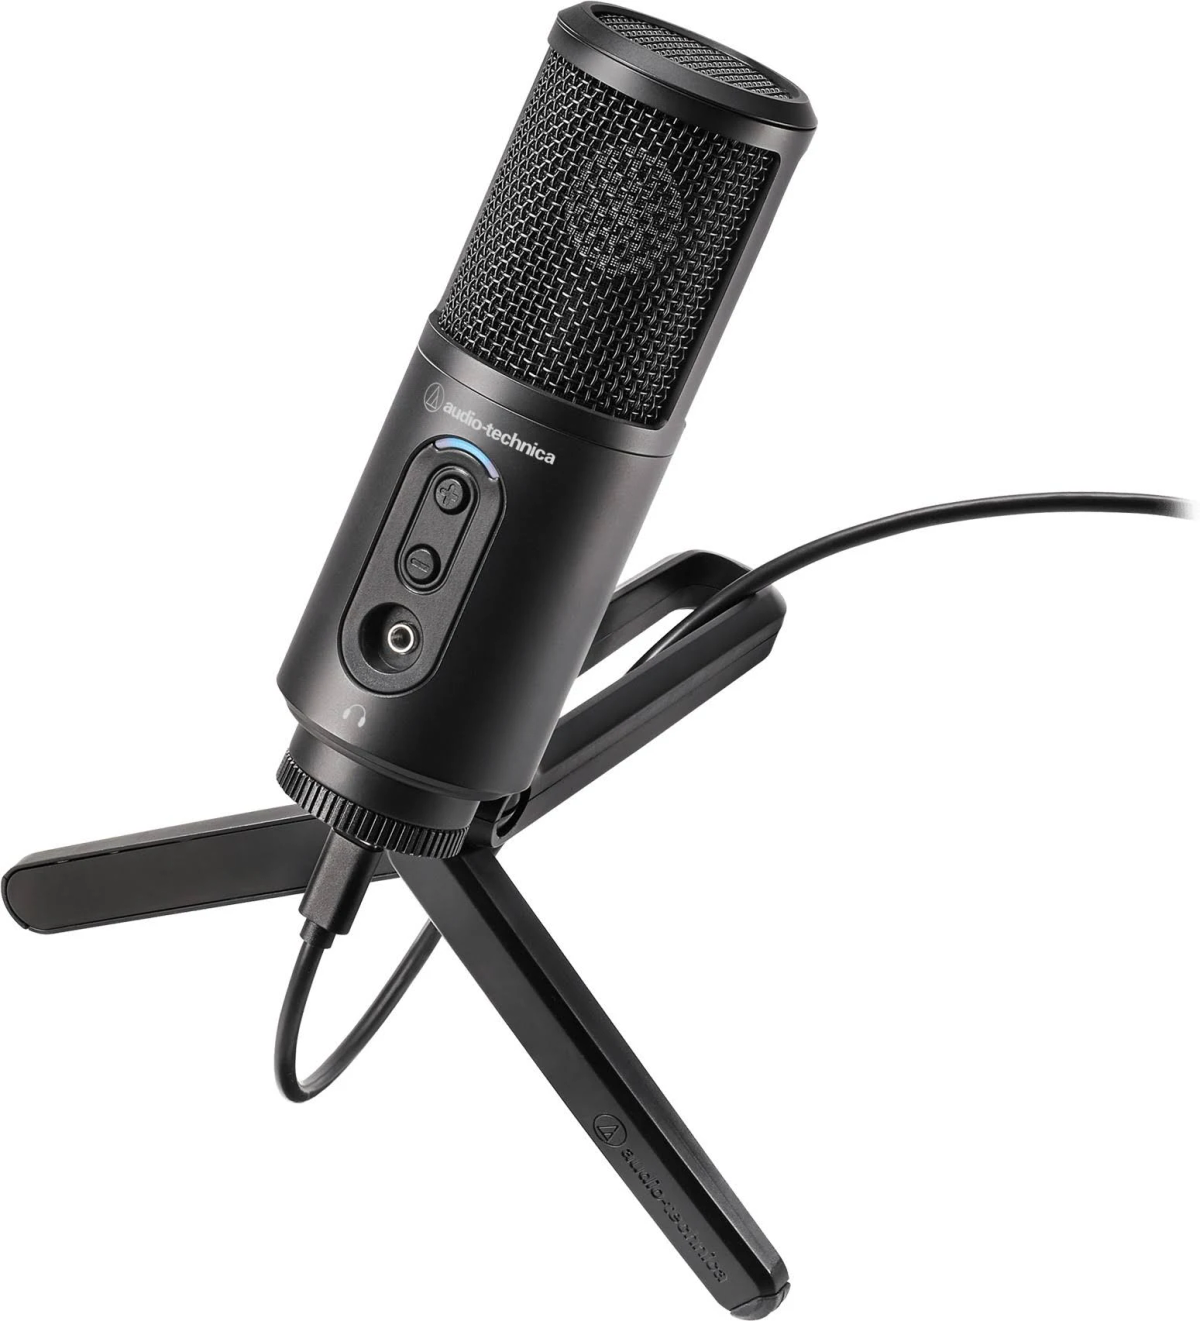 Mikrofon, ATR2500x-USB AUDIO-TECHNICA Schwarz